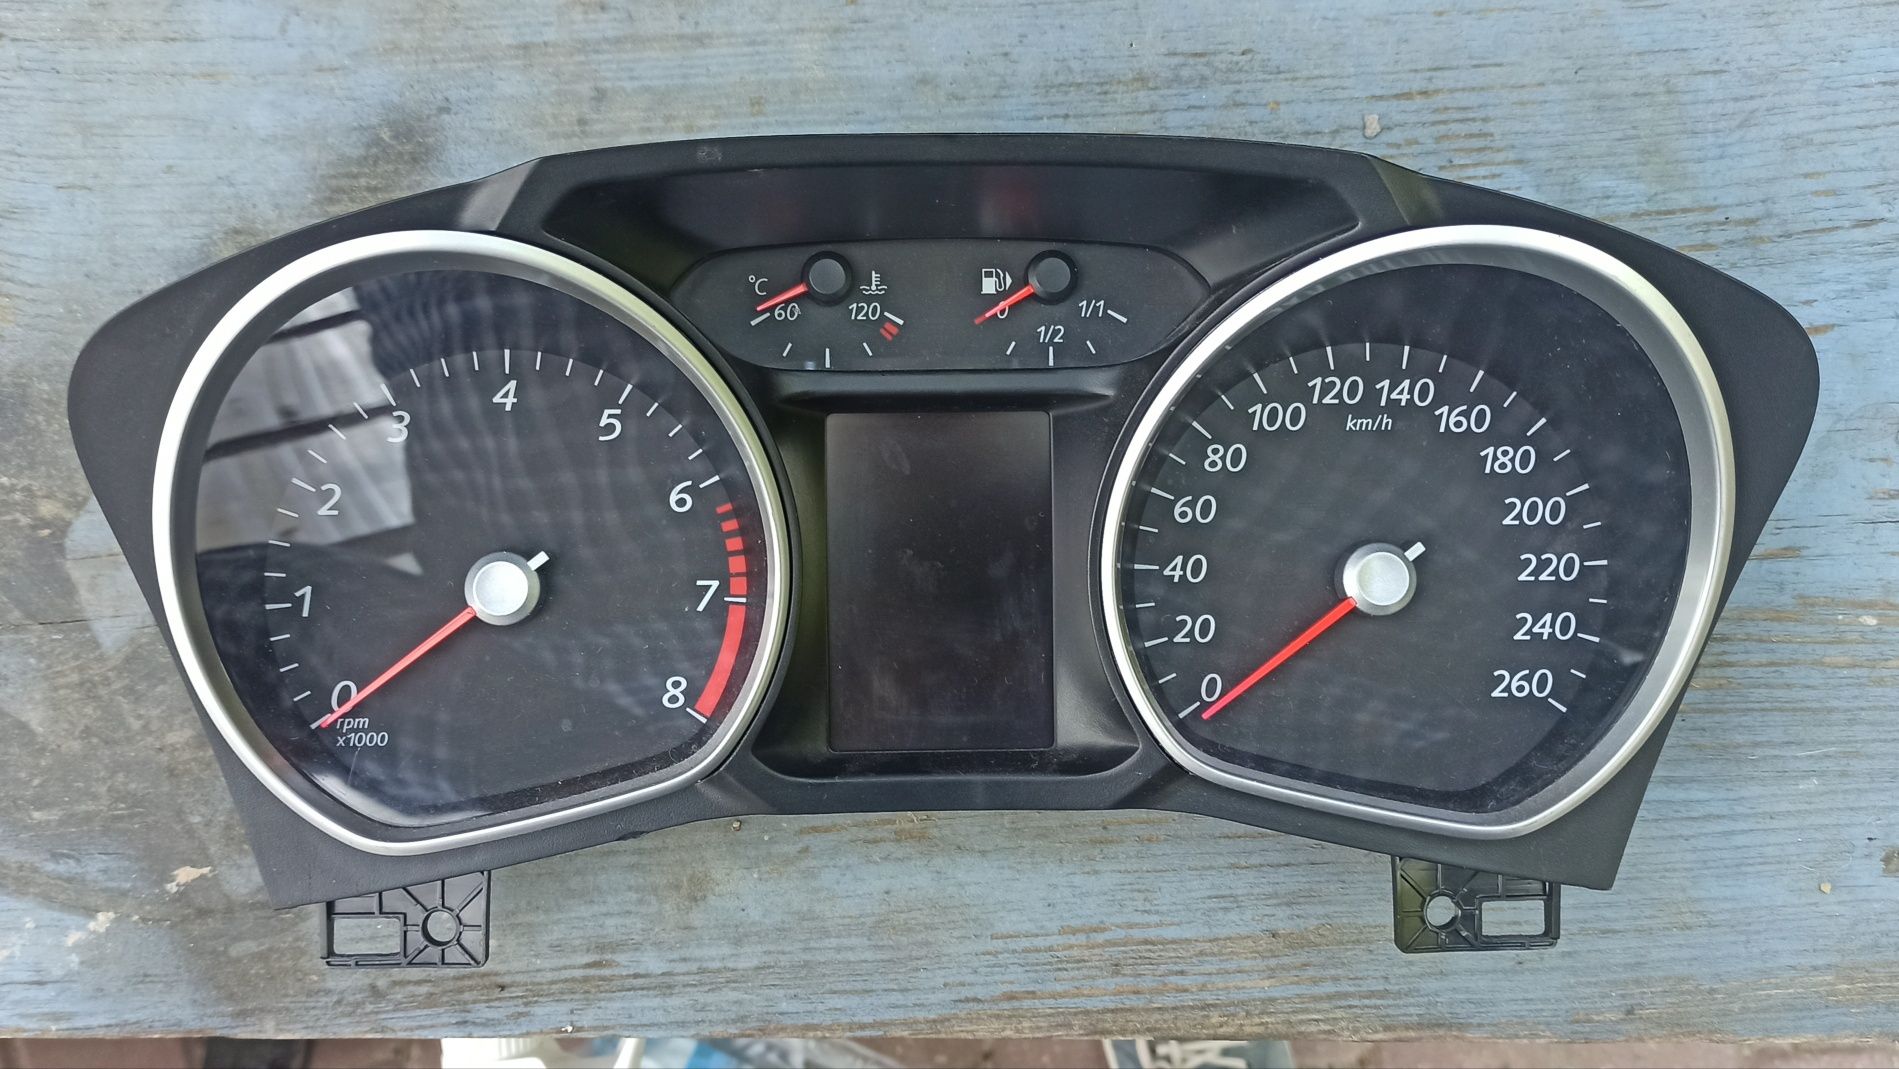 Licznik zegary ford mondeo europa duży fis 2.0 benzyna 145km przedlift